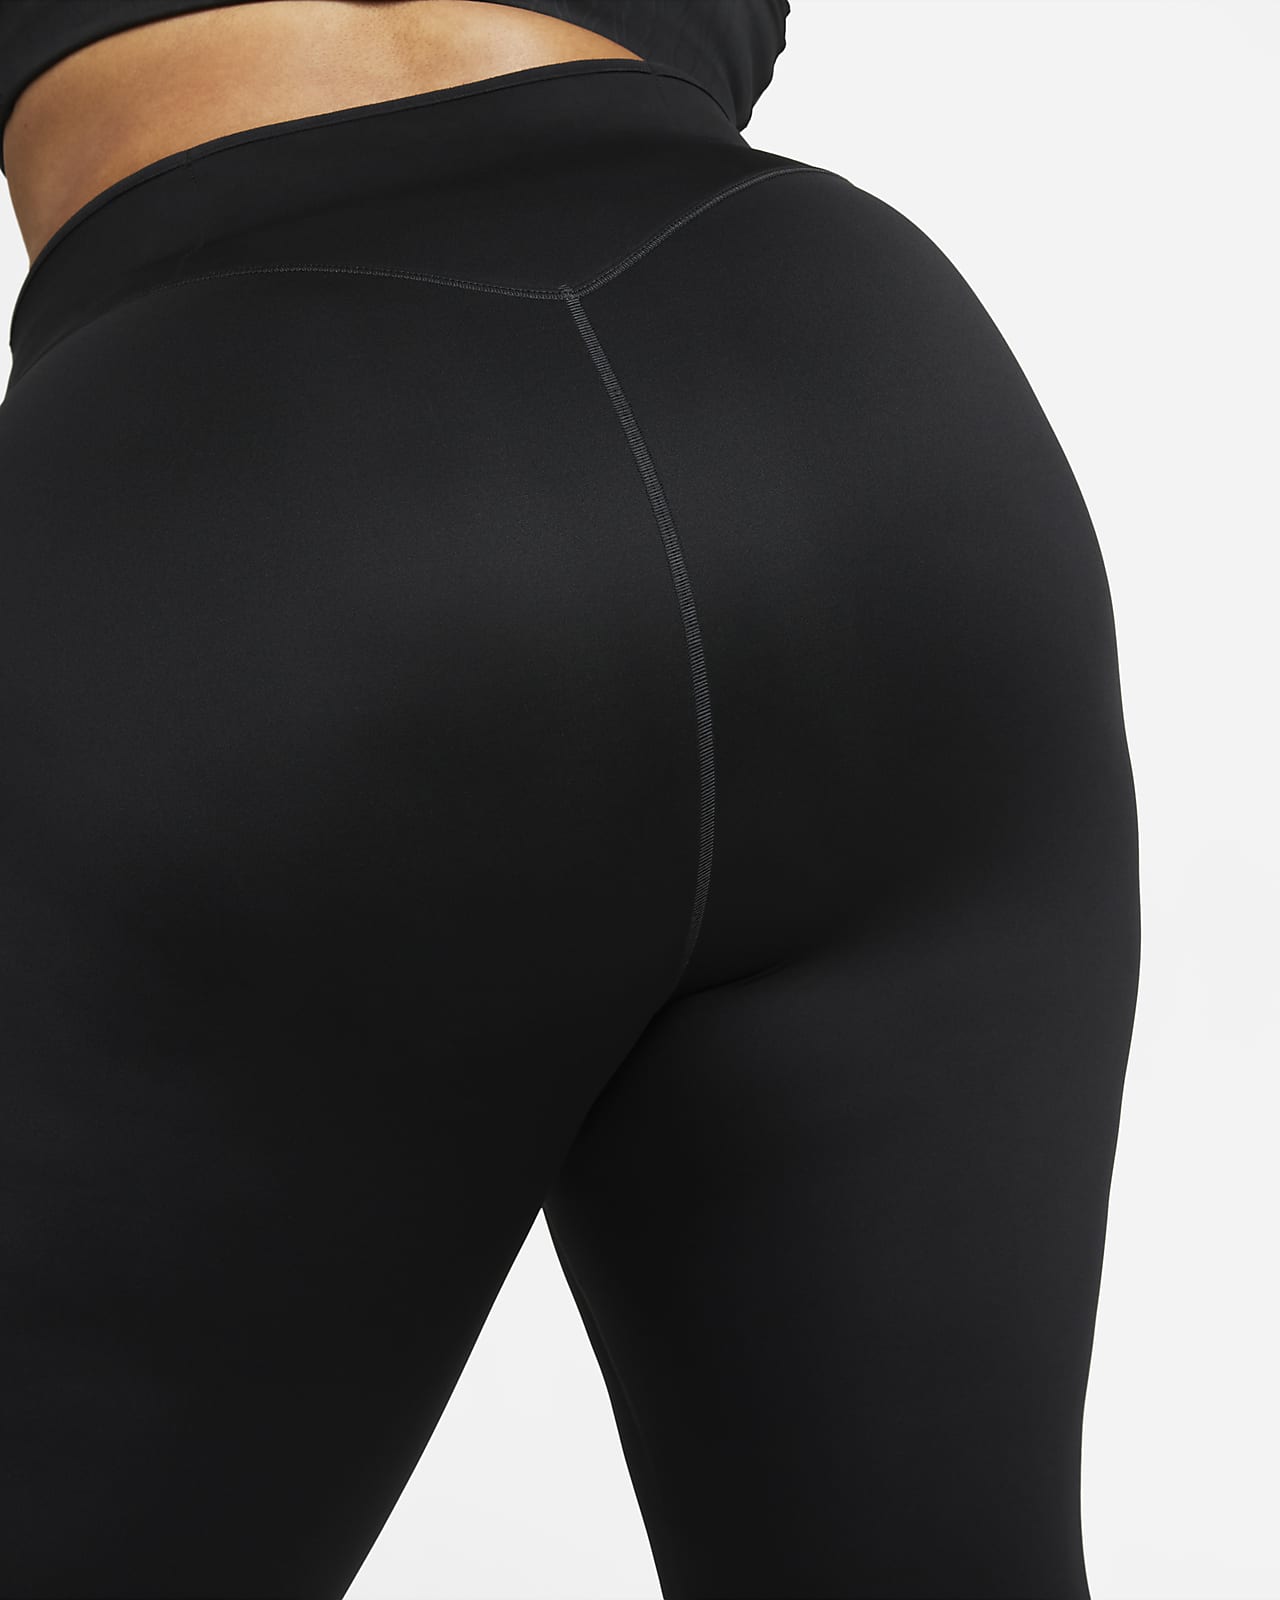 Nike Women's Zenvy Gentle-Support High-Waisted 7/8 Leggings | Dick's  Sporting Goods